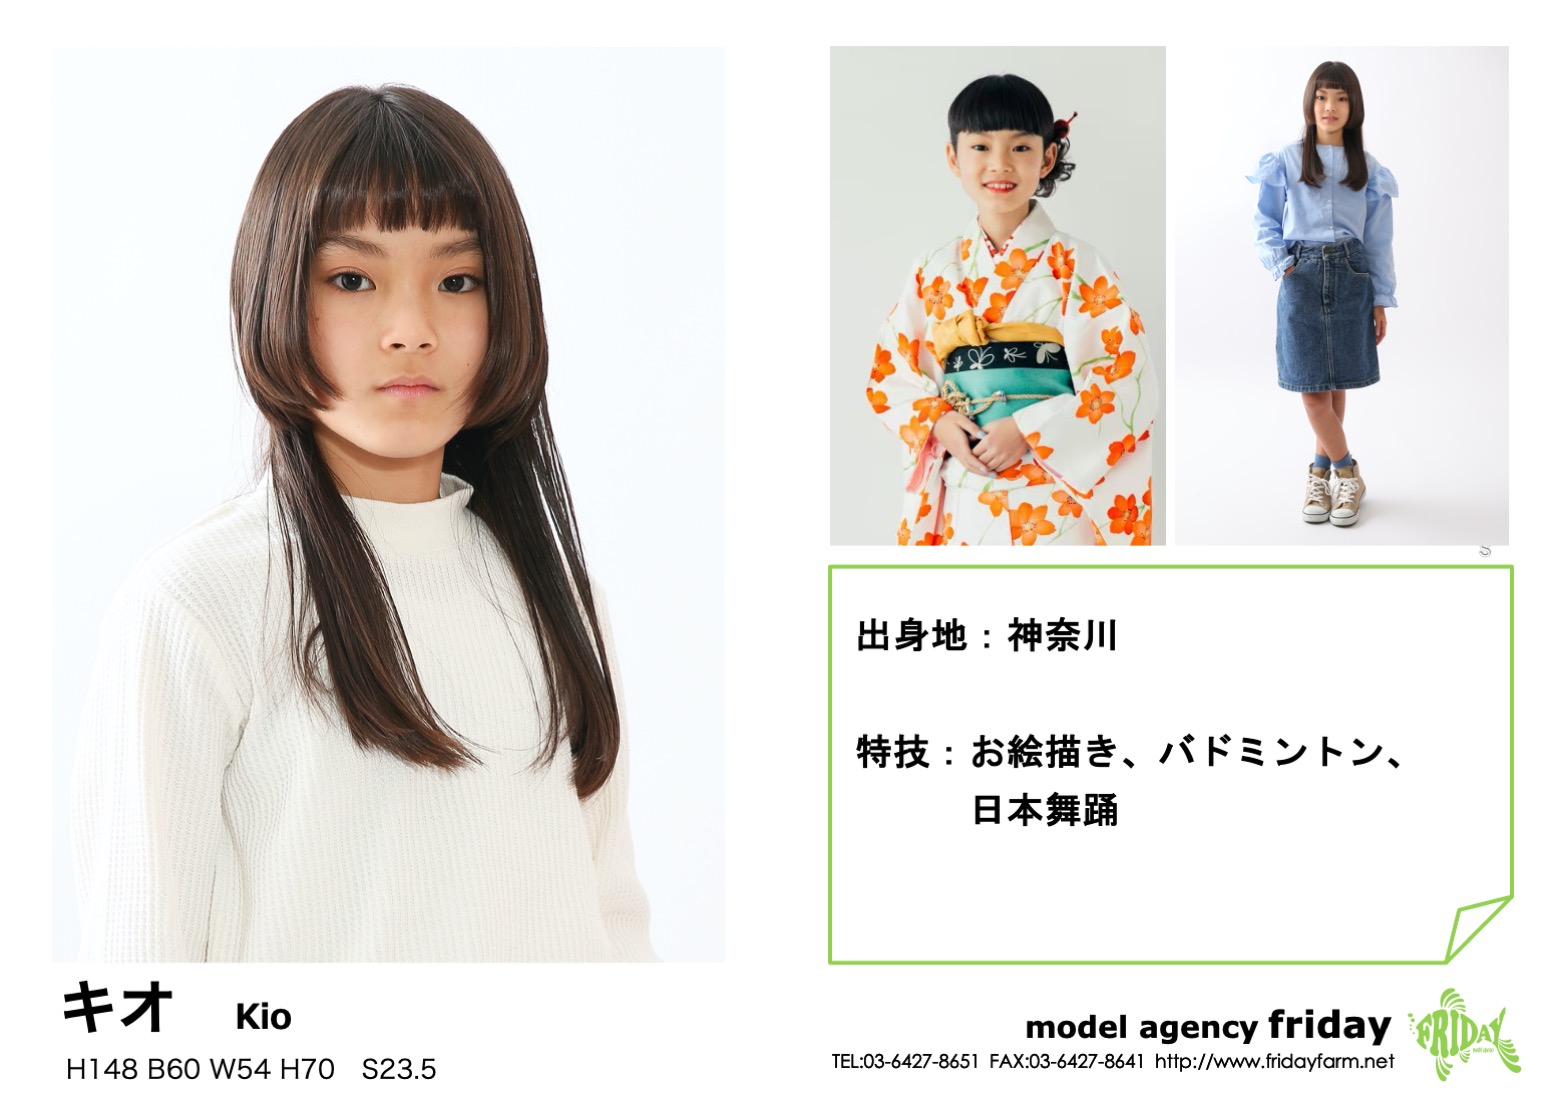 キオ - Kio | model agency friday